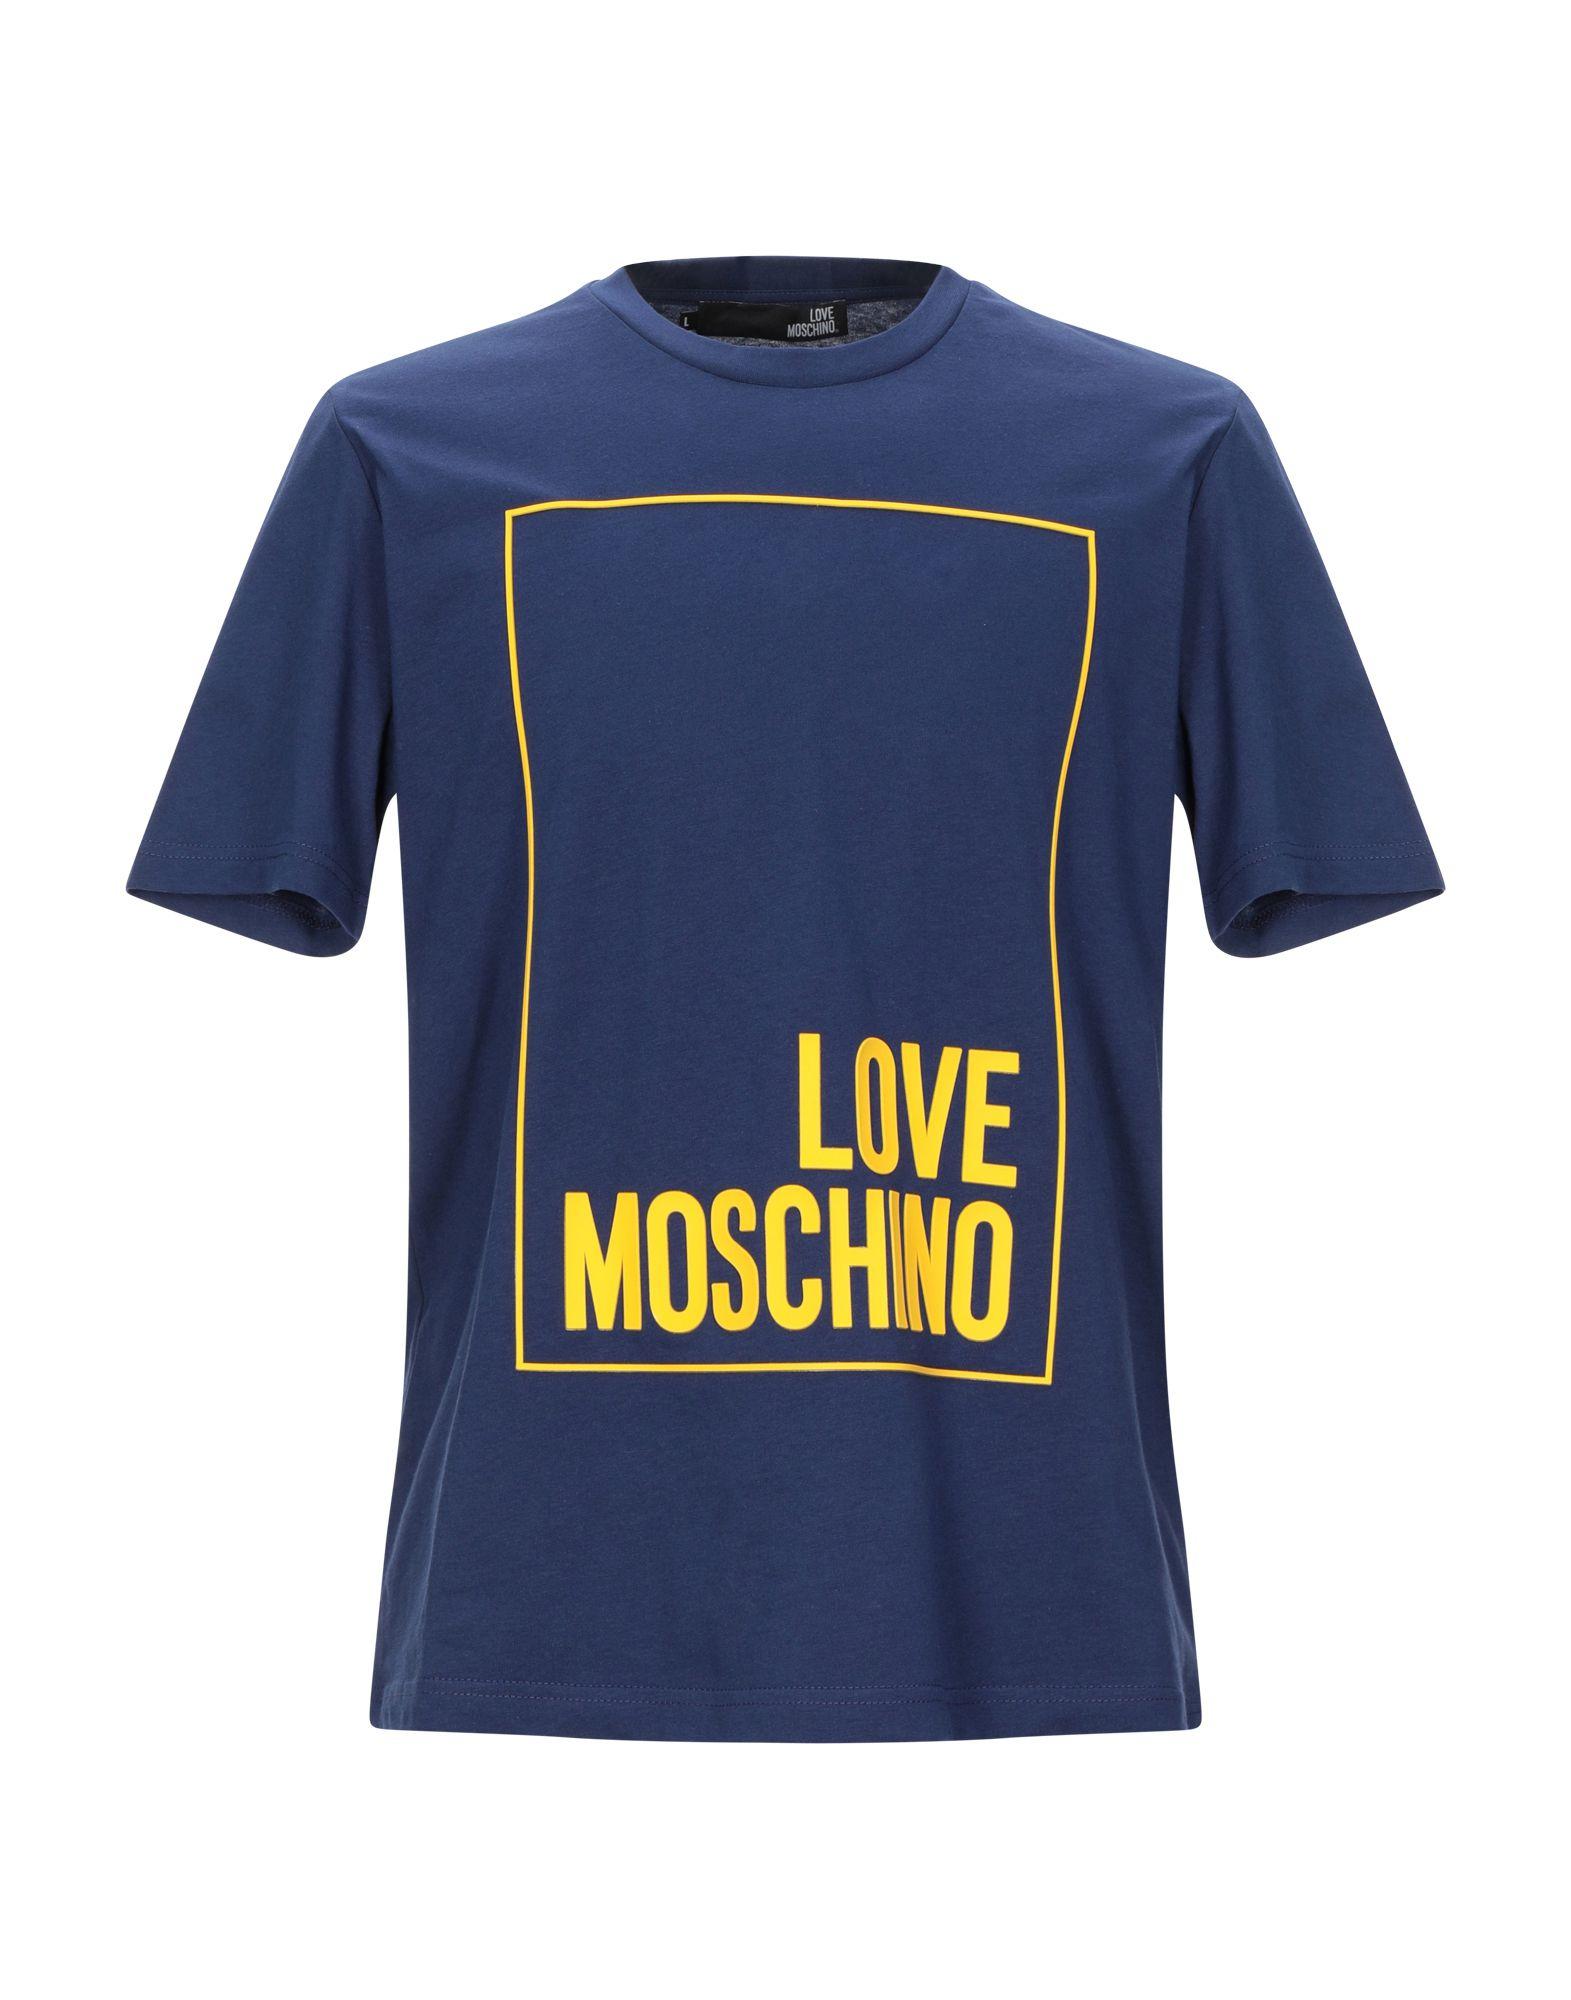 Love Moschino Cotton T-shirt in Dark Blue (Blue) for Men - Lyst